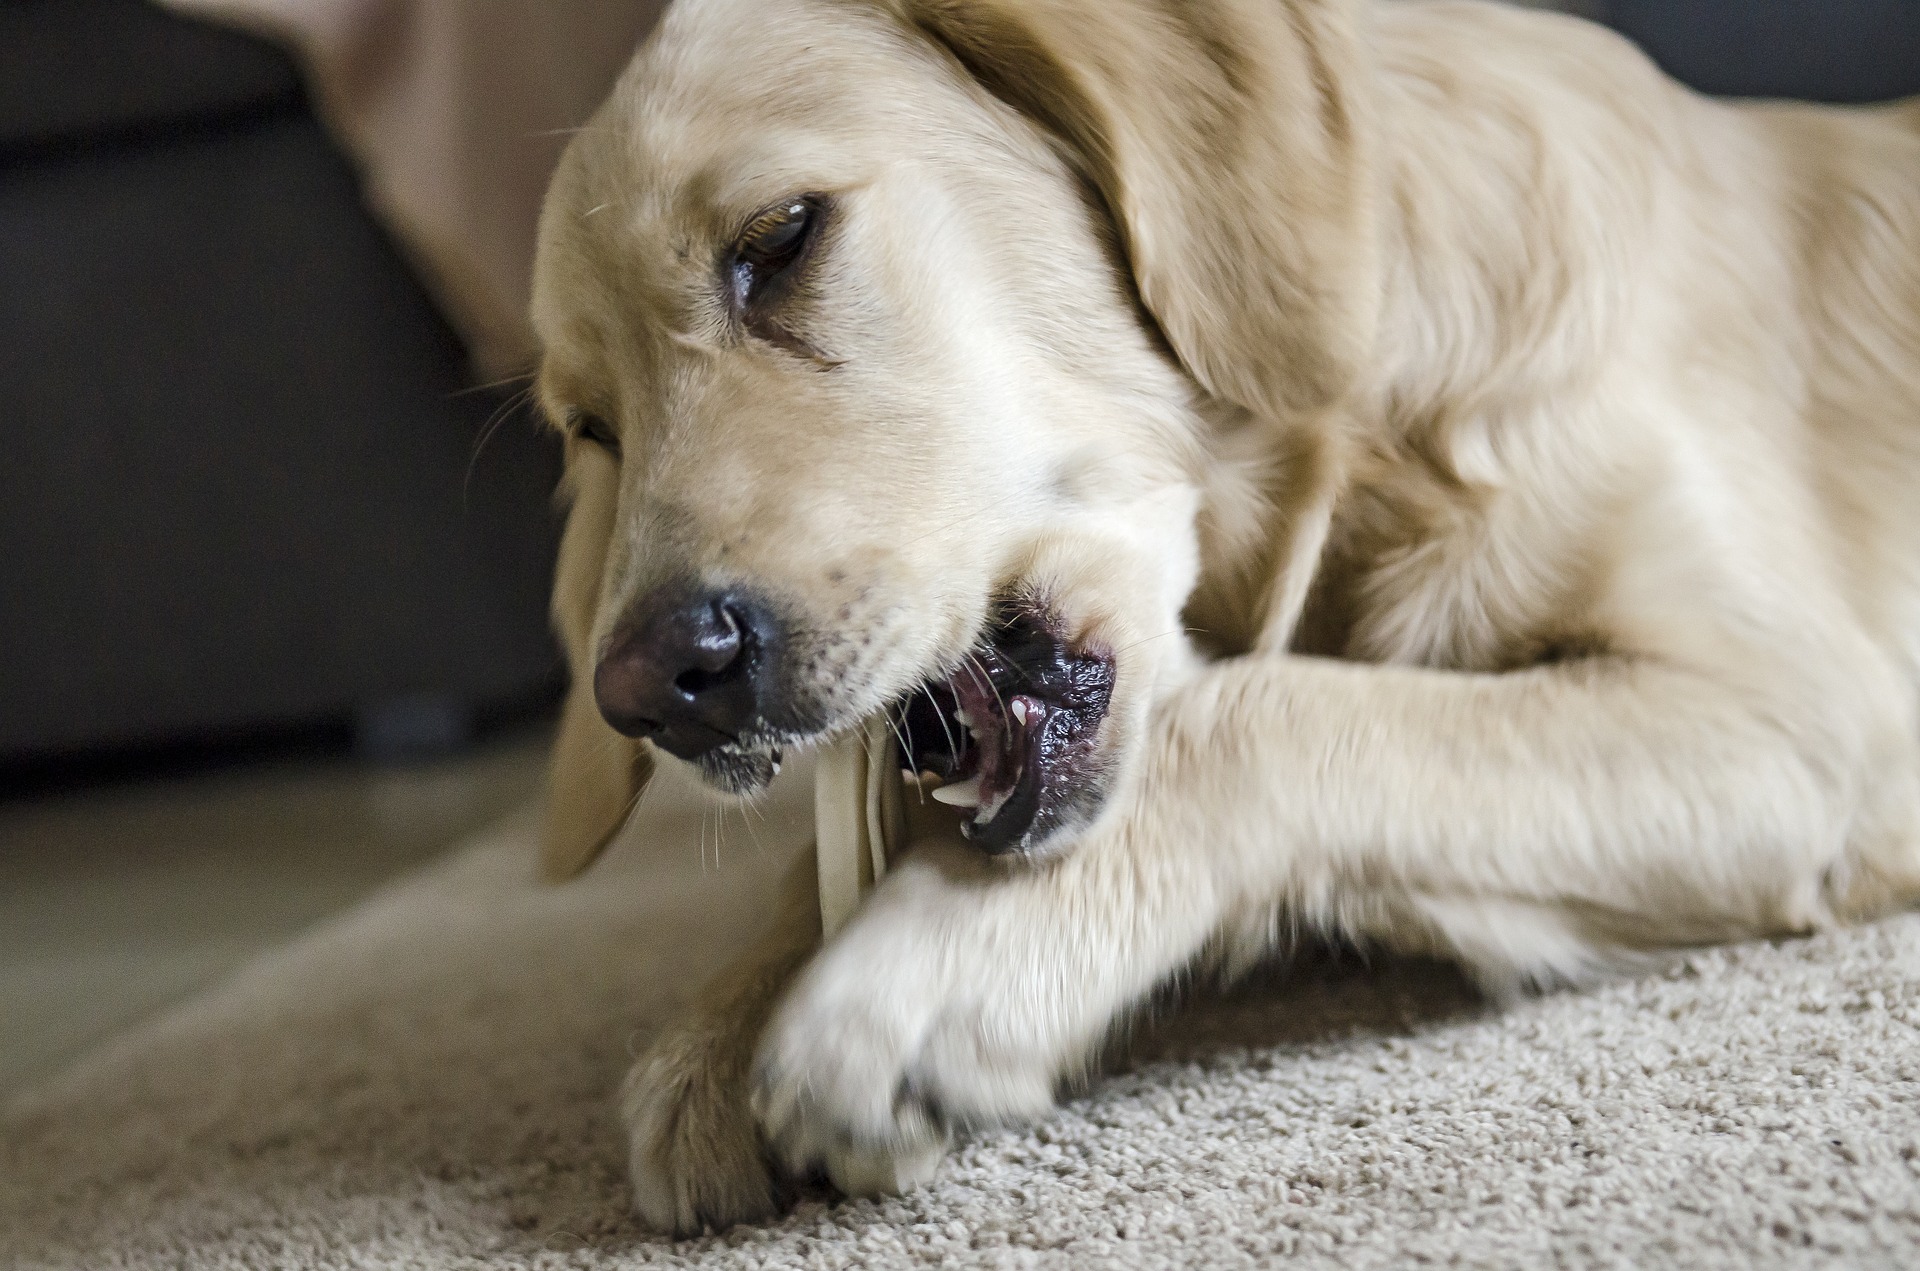 Aby se zabránilo tvorbě zubního kamene u psů, je nutné je pravidelně čistit a dbát na správnou stravu. Přírodní kousátka pro psy jsou užitečné.